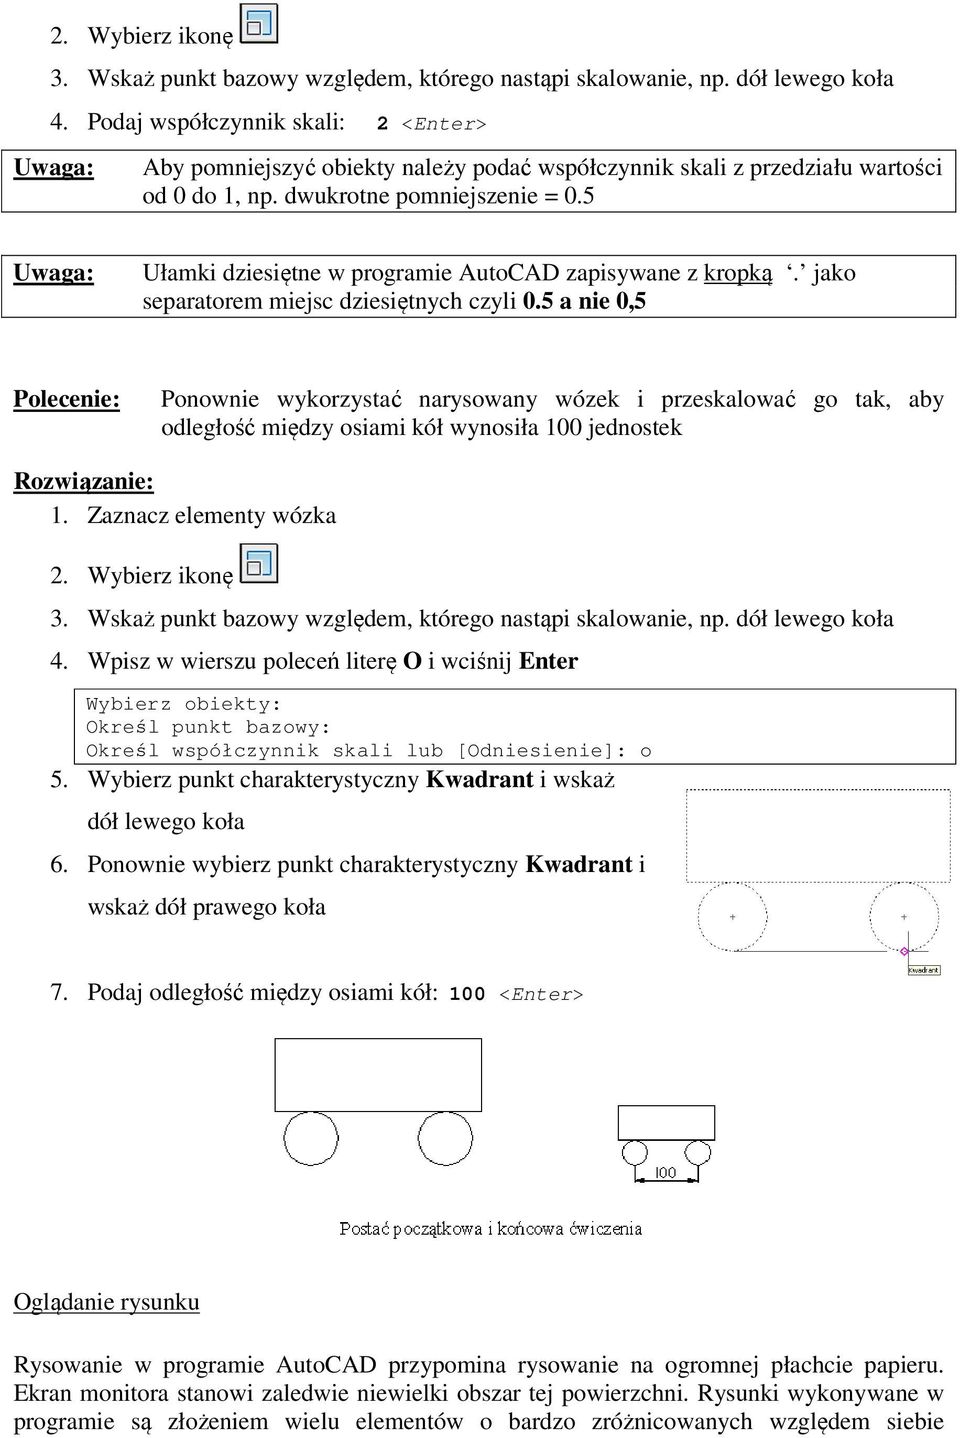 5 Uwaga: Ułamki dziesiętne w programie AutoCAD zapisywane z kropką. jako separatorem miejsc dziesiętnych czyli 0.